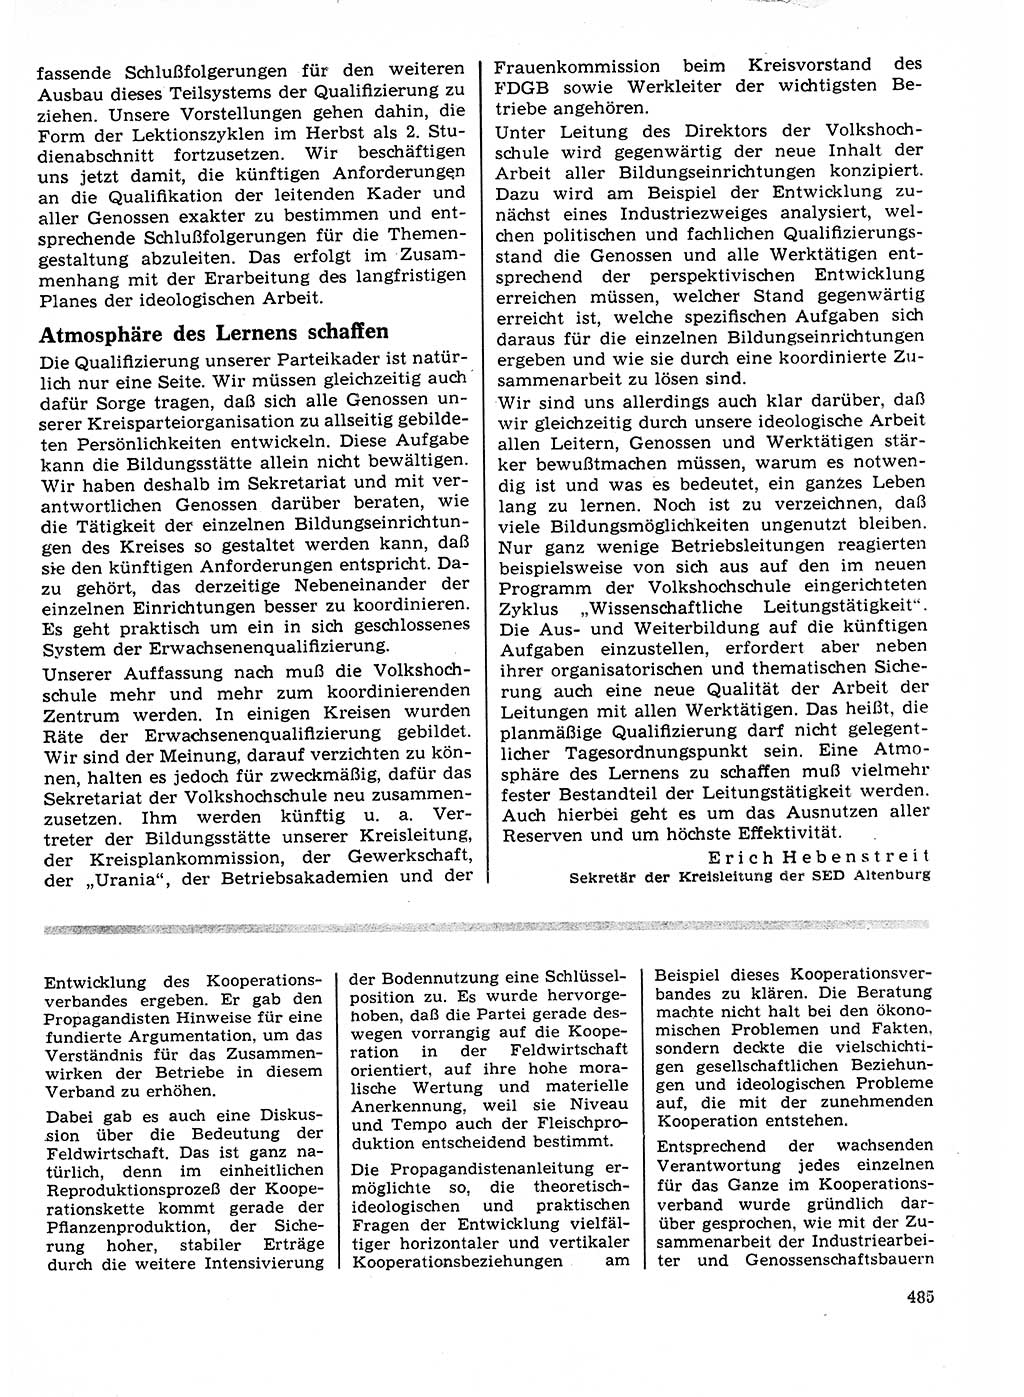 Neuer Weg (NW), Organ des Zentralkomitees (ZK) der SED (Sozialistische Einheitspartei Deutschlands) für Fragen des Parteilebens, 23. Jahrgang [Deutsche Demokratische Republik (DDR)] 1968, Seite 485 (NW ZK SED DDR 1968, S. 485)